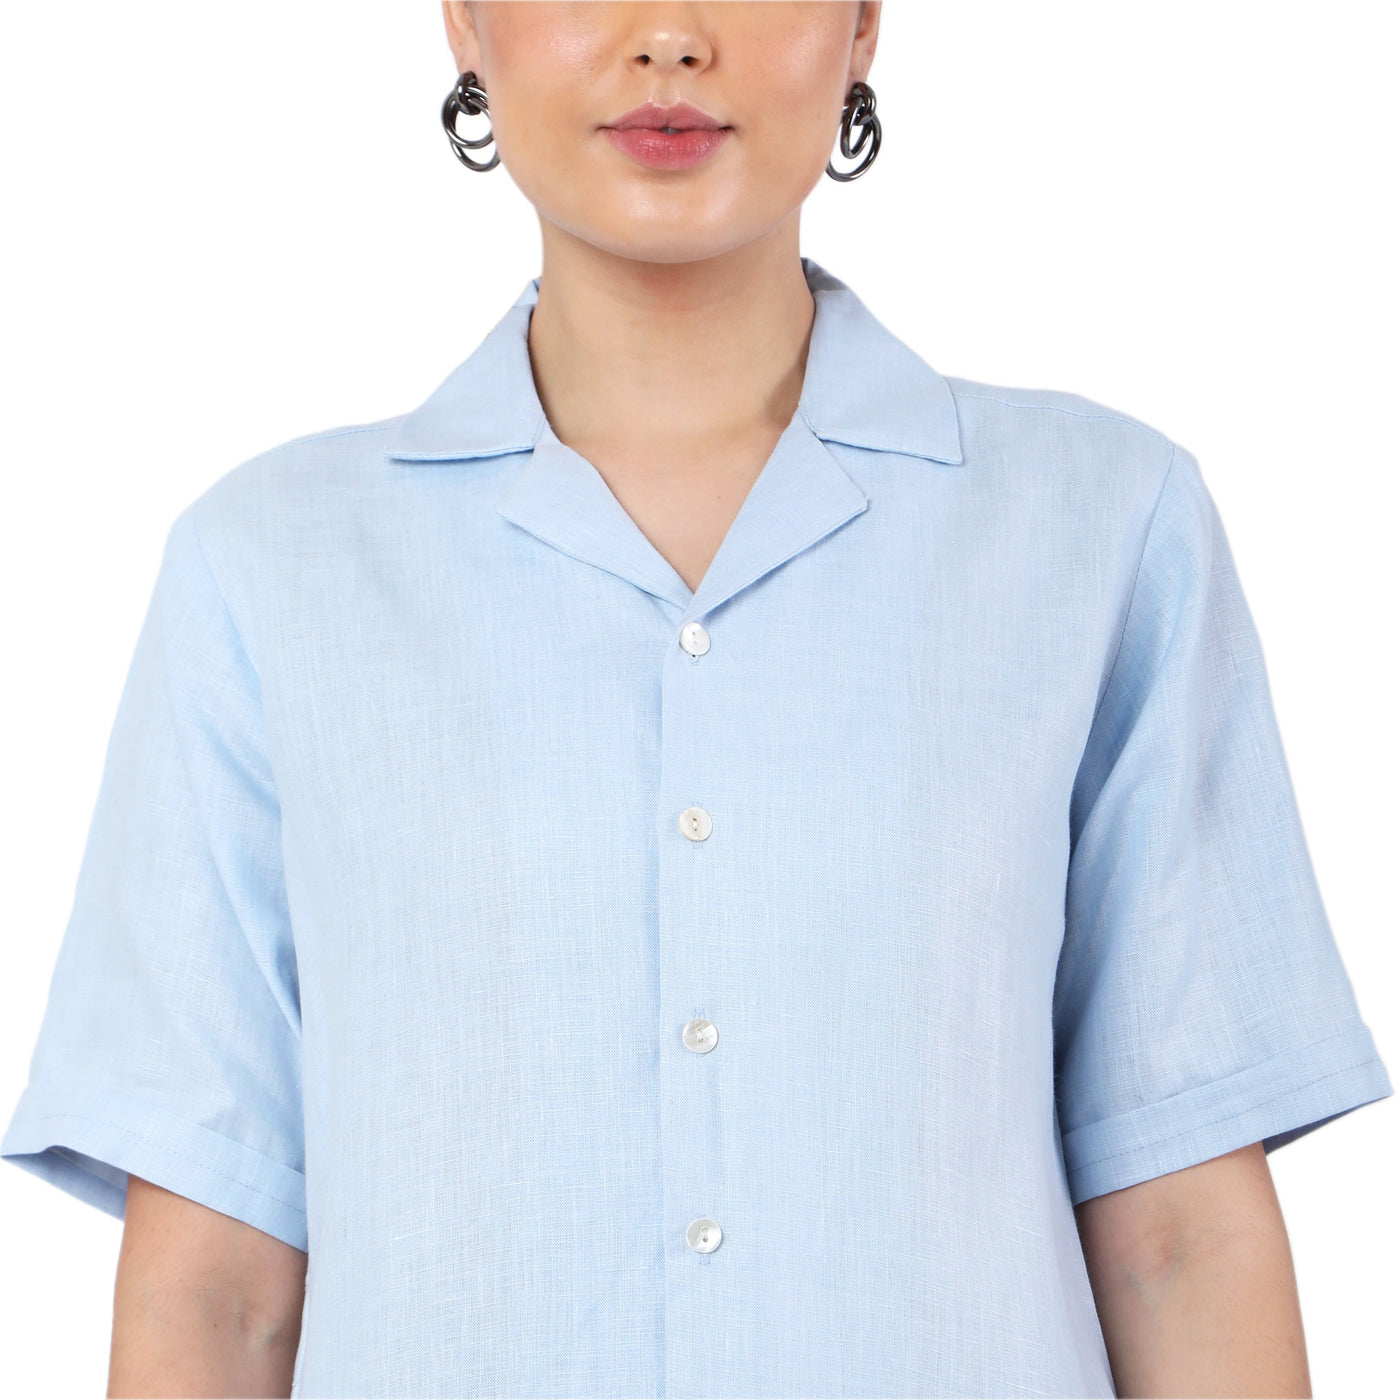 Women's Hemp Over-Sized Blue Shirt